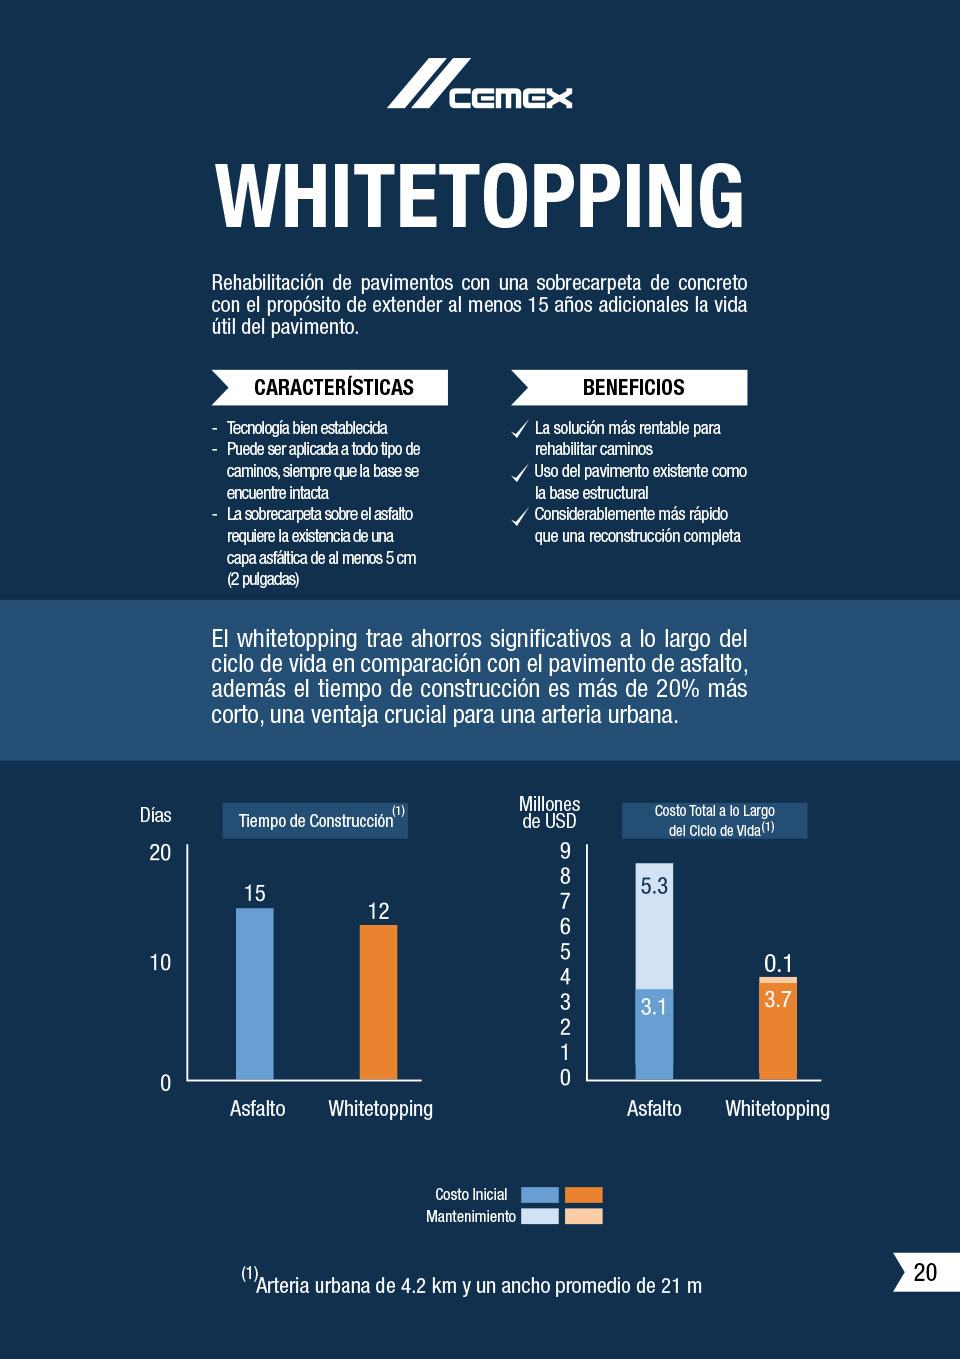 la imagen muestra caracteristicas y beneficios del whitetopping